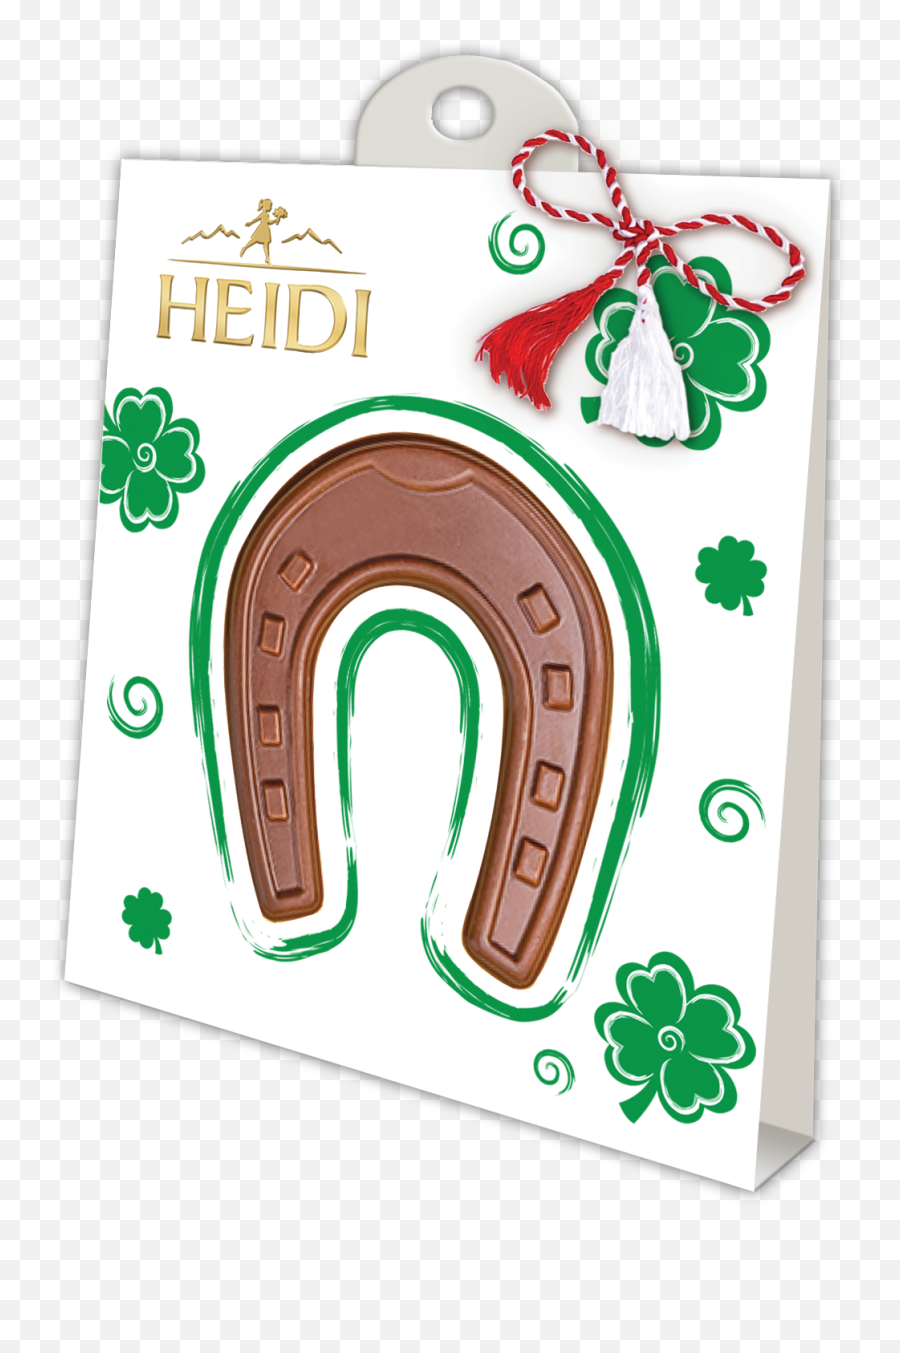 Heidi Chocolate - Martisoare De Ciocolata Heidi Emoji,Martisor Emoticon